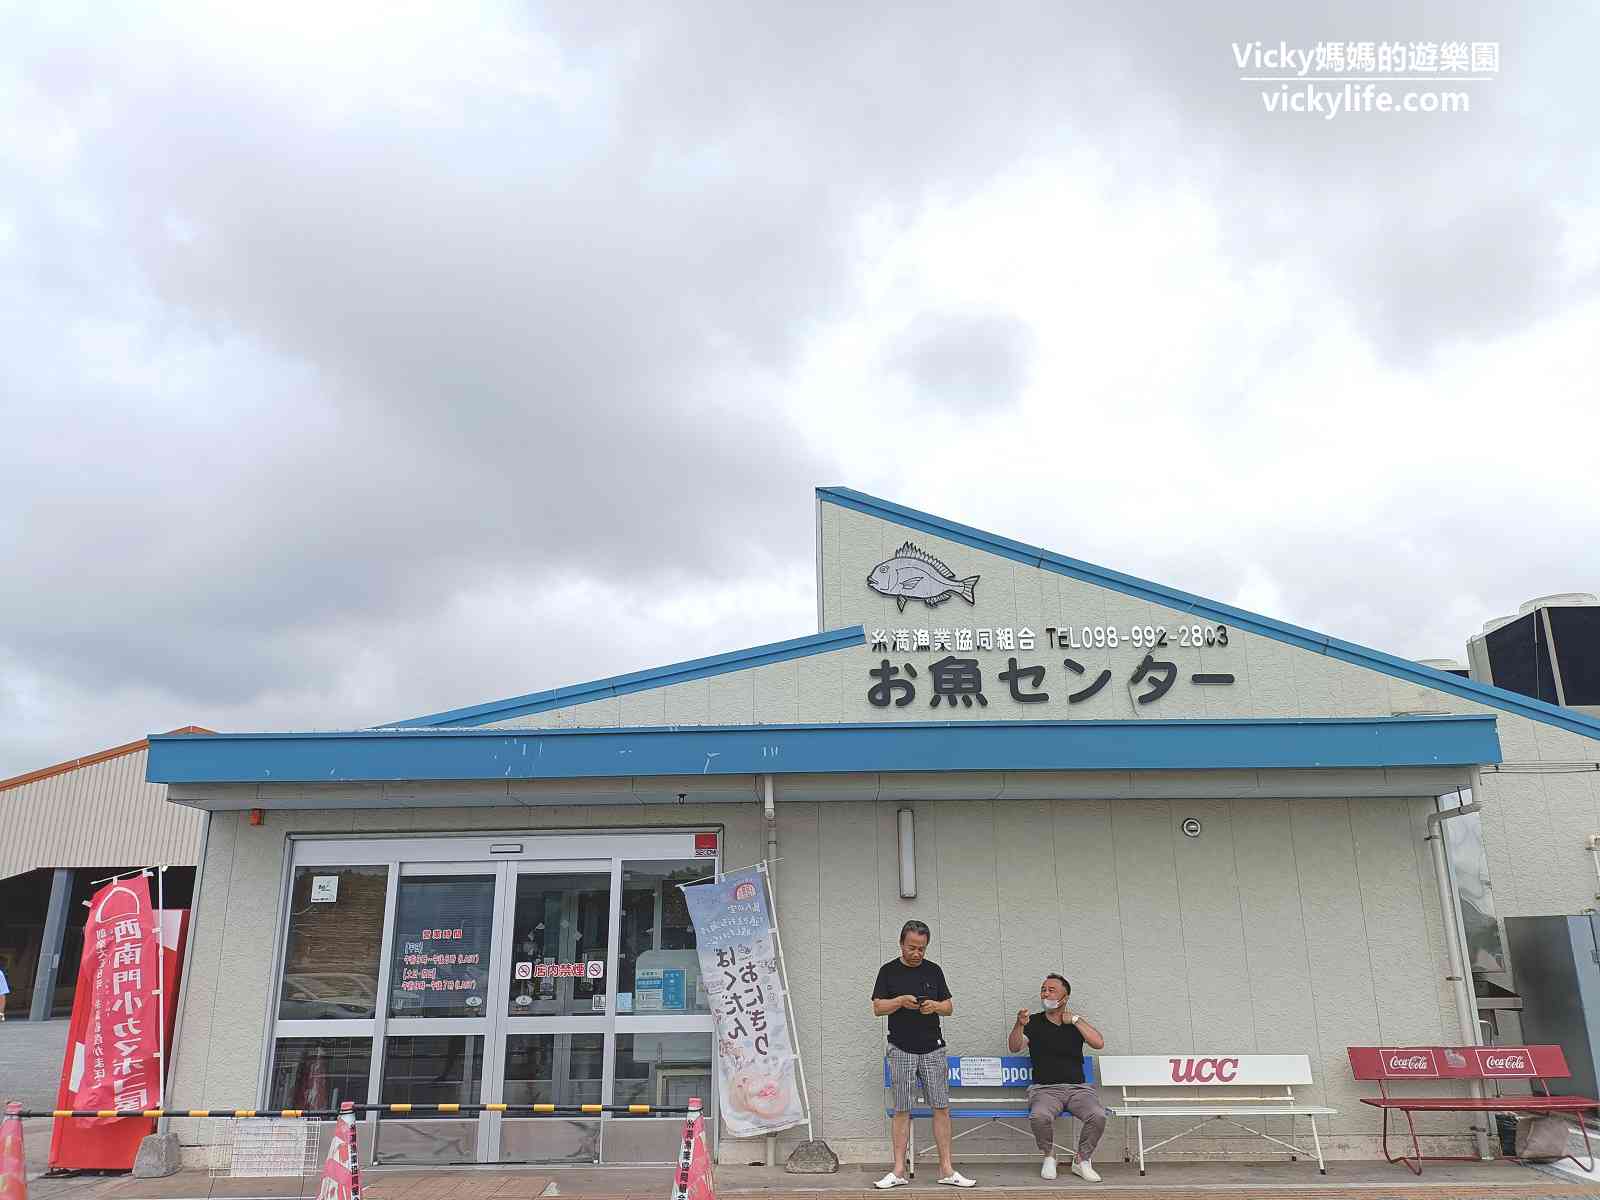 沖繩景點︱系滿魚市場：新鮮平價、環境乾淨，附用餐區，那霸機場美食第1站，生蠔生魚片吃起來